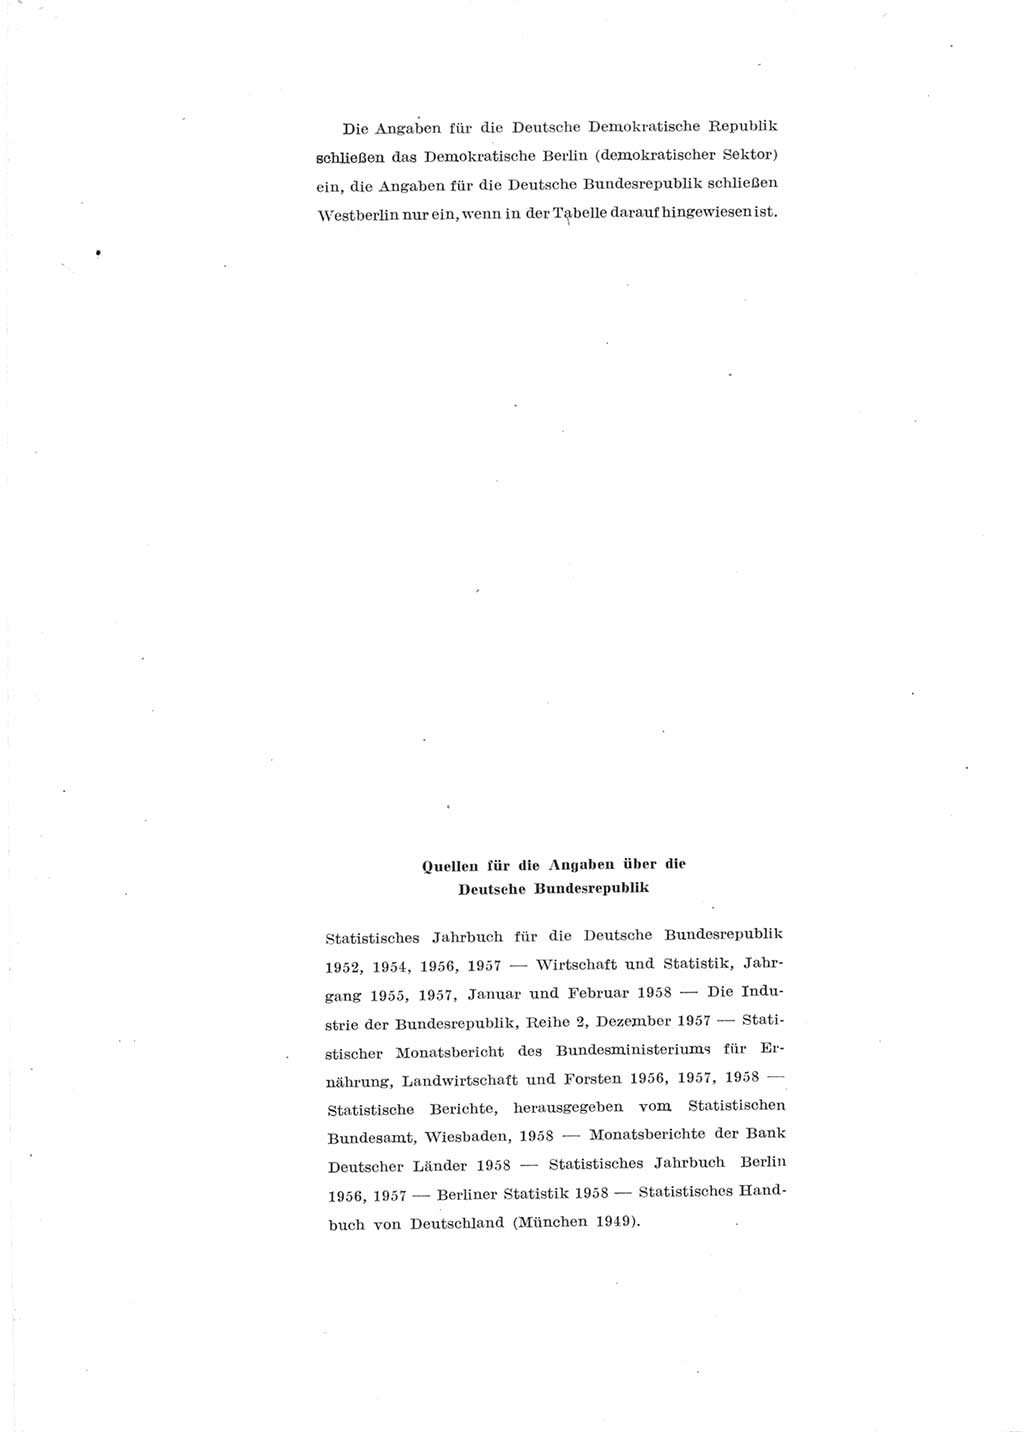 Statistisches Jahrbuch der Deutschen Demokratischen Republik (DDR) 1957, Seite 544 (Stat. Jb. DDR 1957, S. 544)